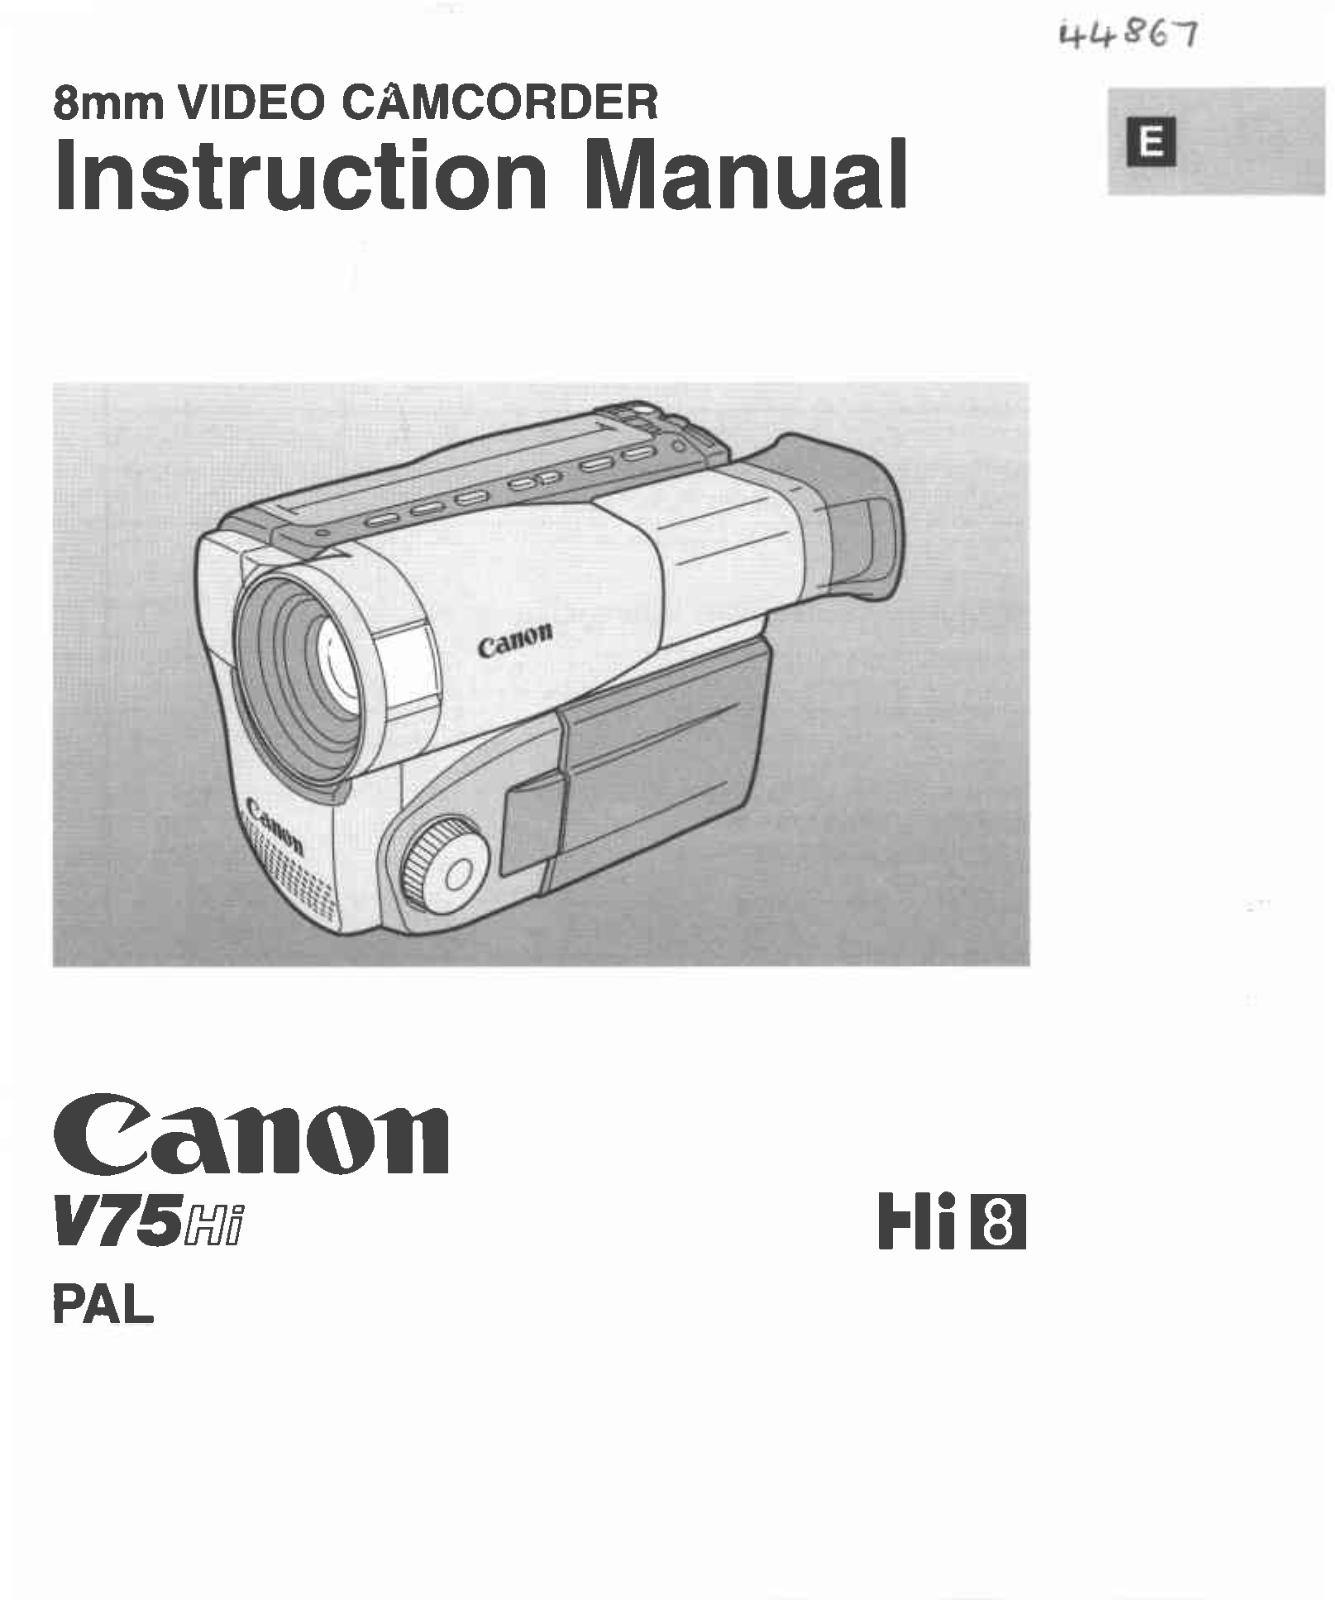 Canon V 75 Hi User Manual